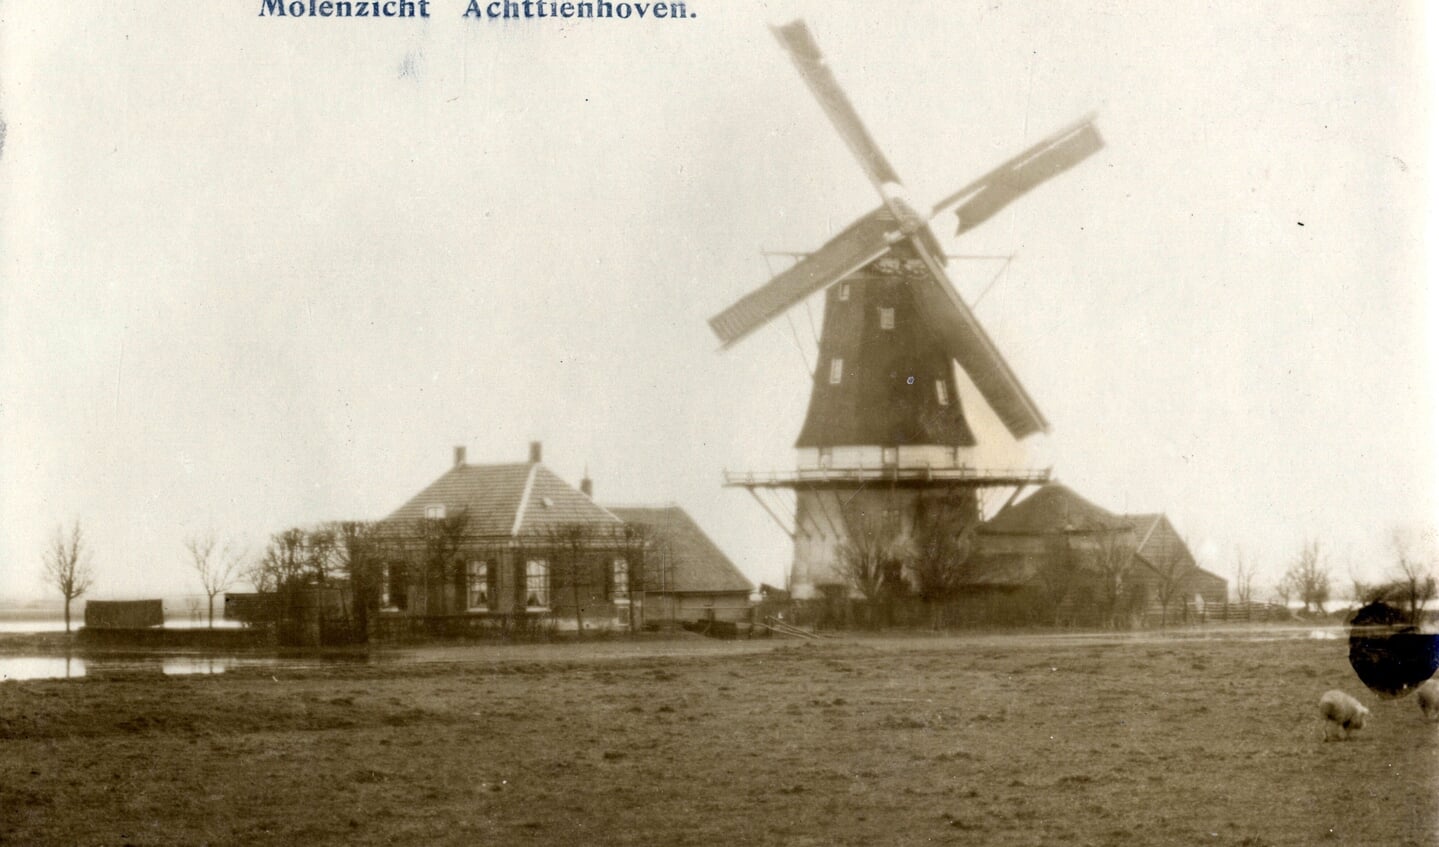 Molen de Kraai anno 1910. (foto Utrechts archief)